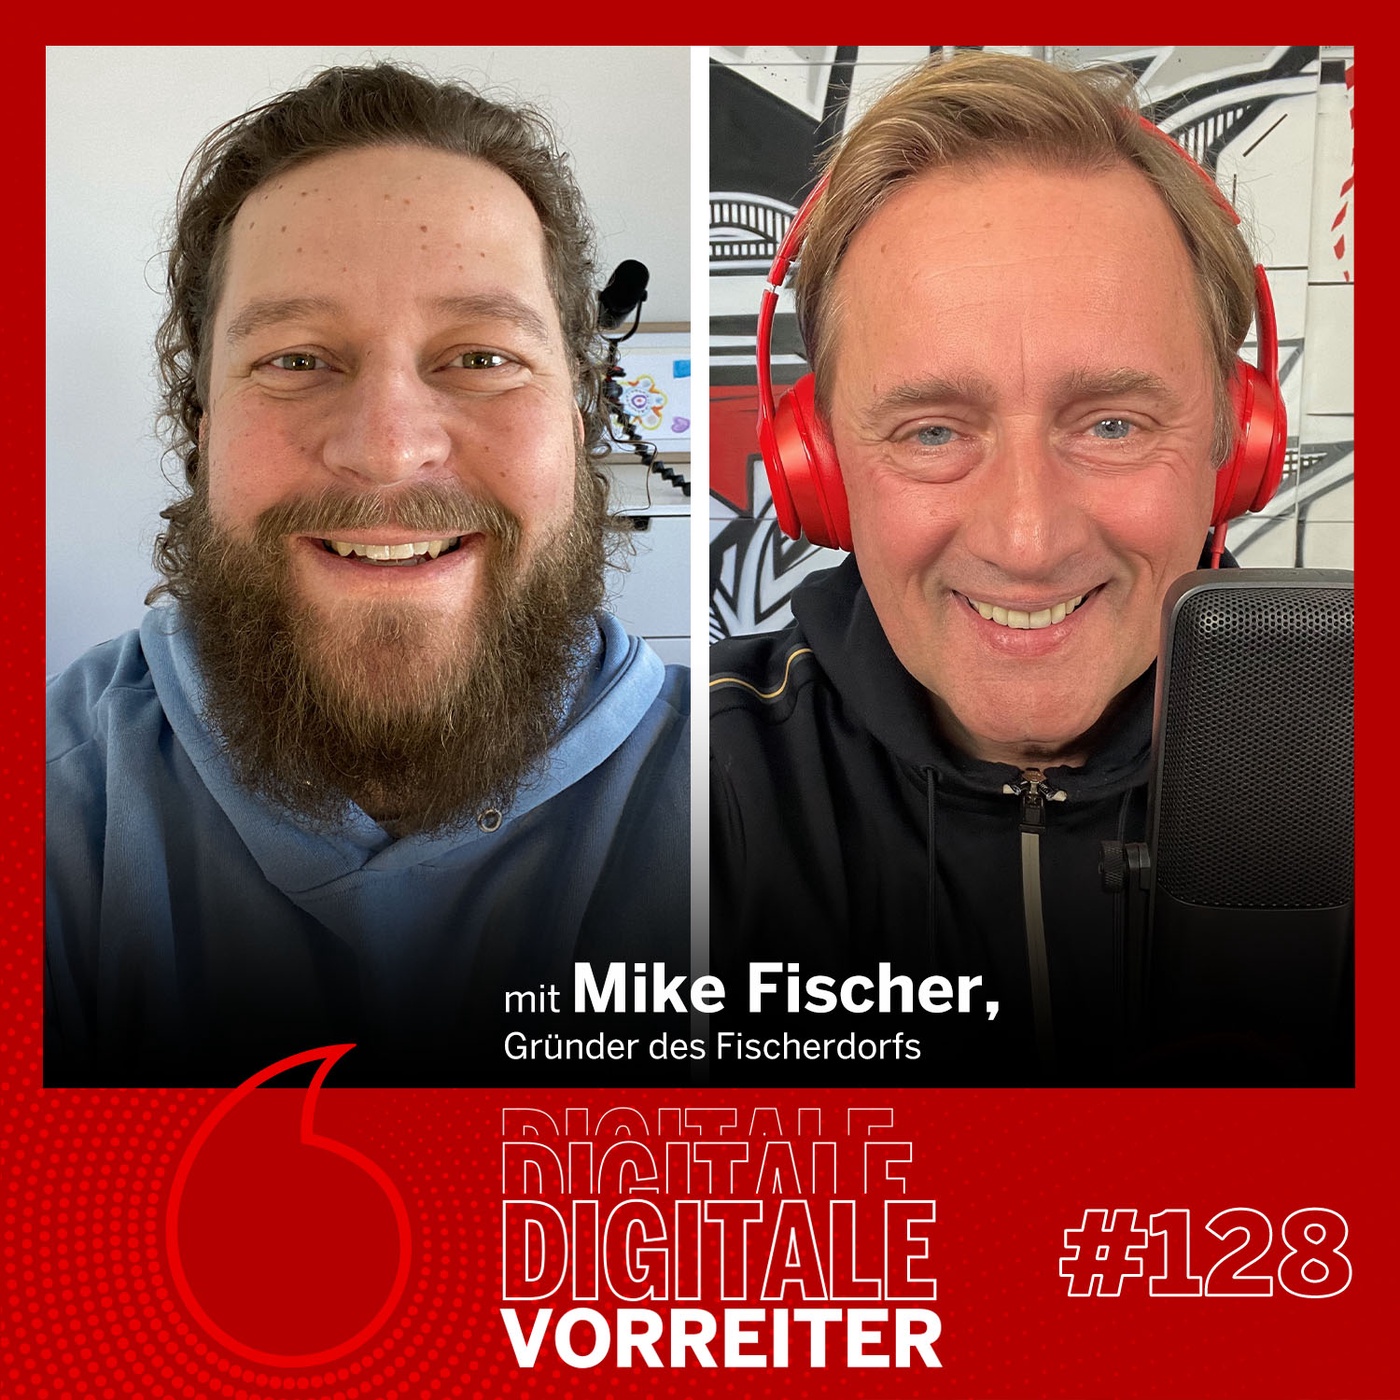 Der YouTube-Erfolg des “Fischerdorfs”: Bei Mike Fischer machen Influencer:innen ihren Führerschein